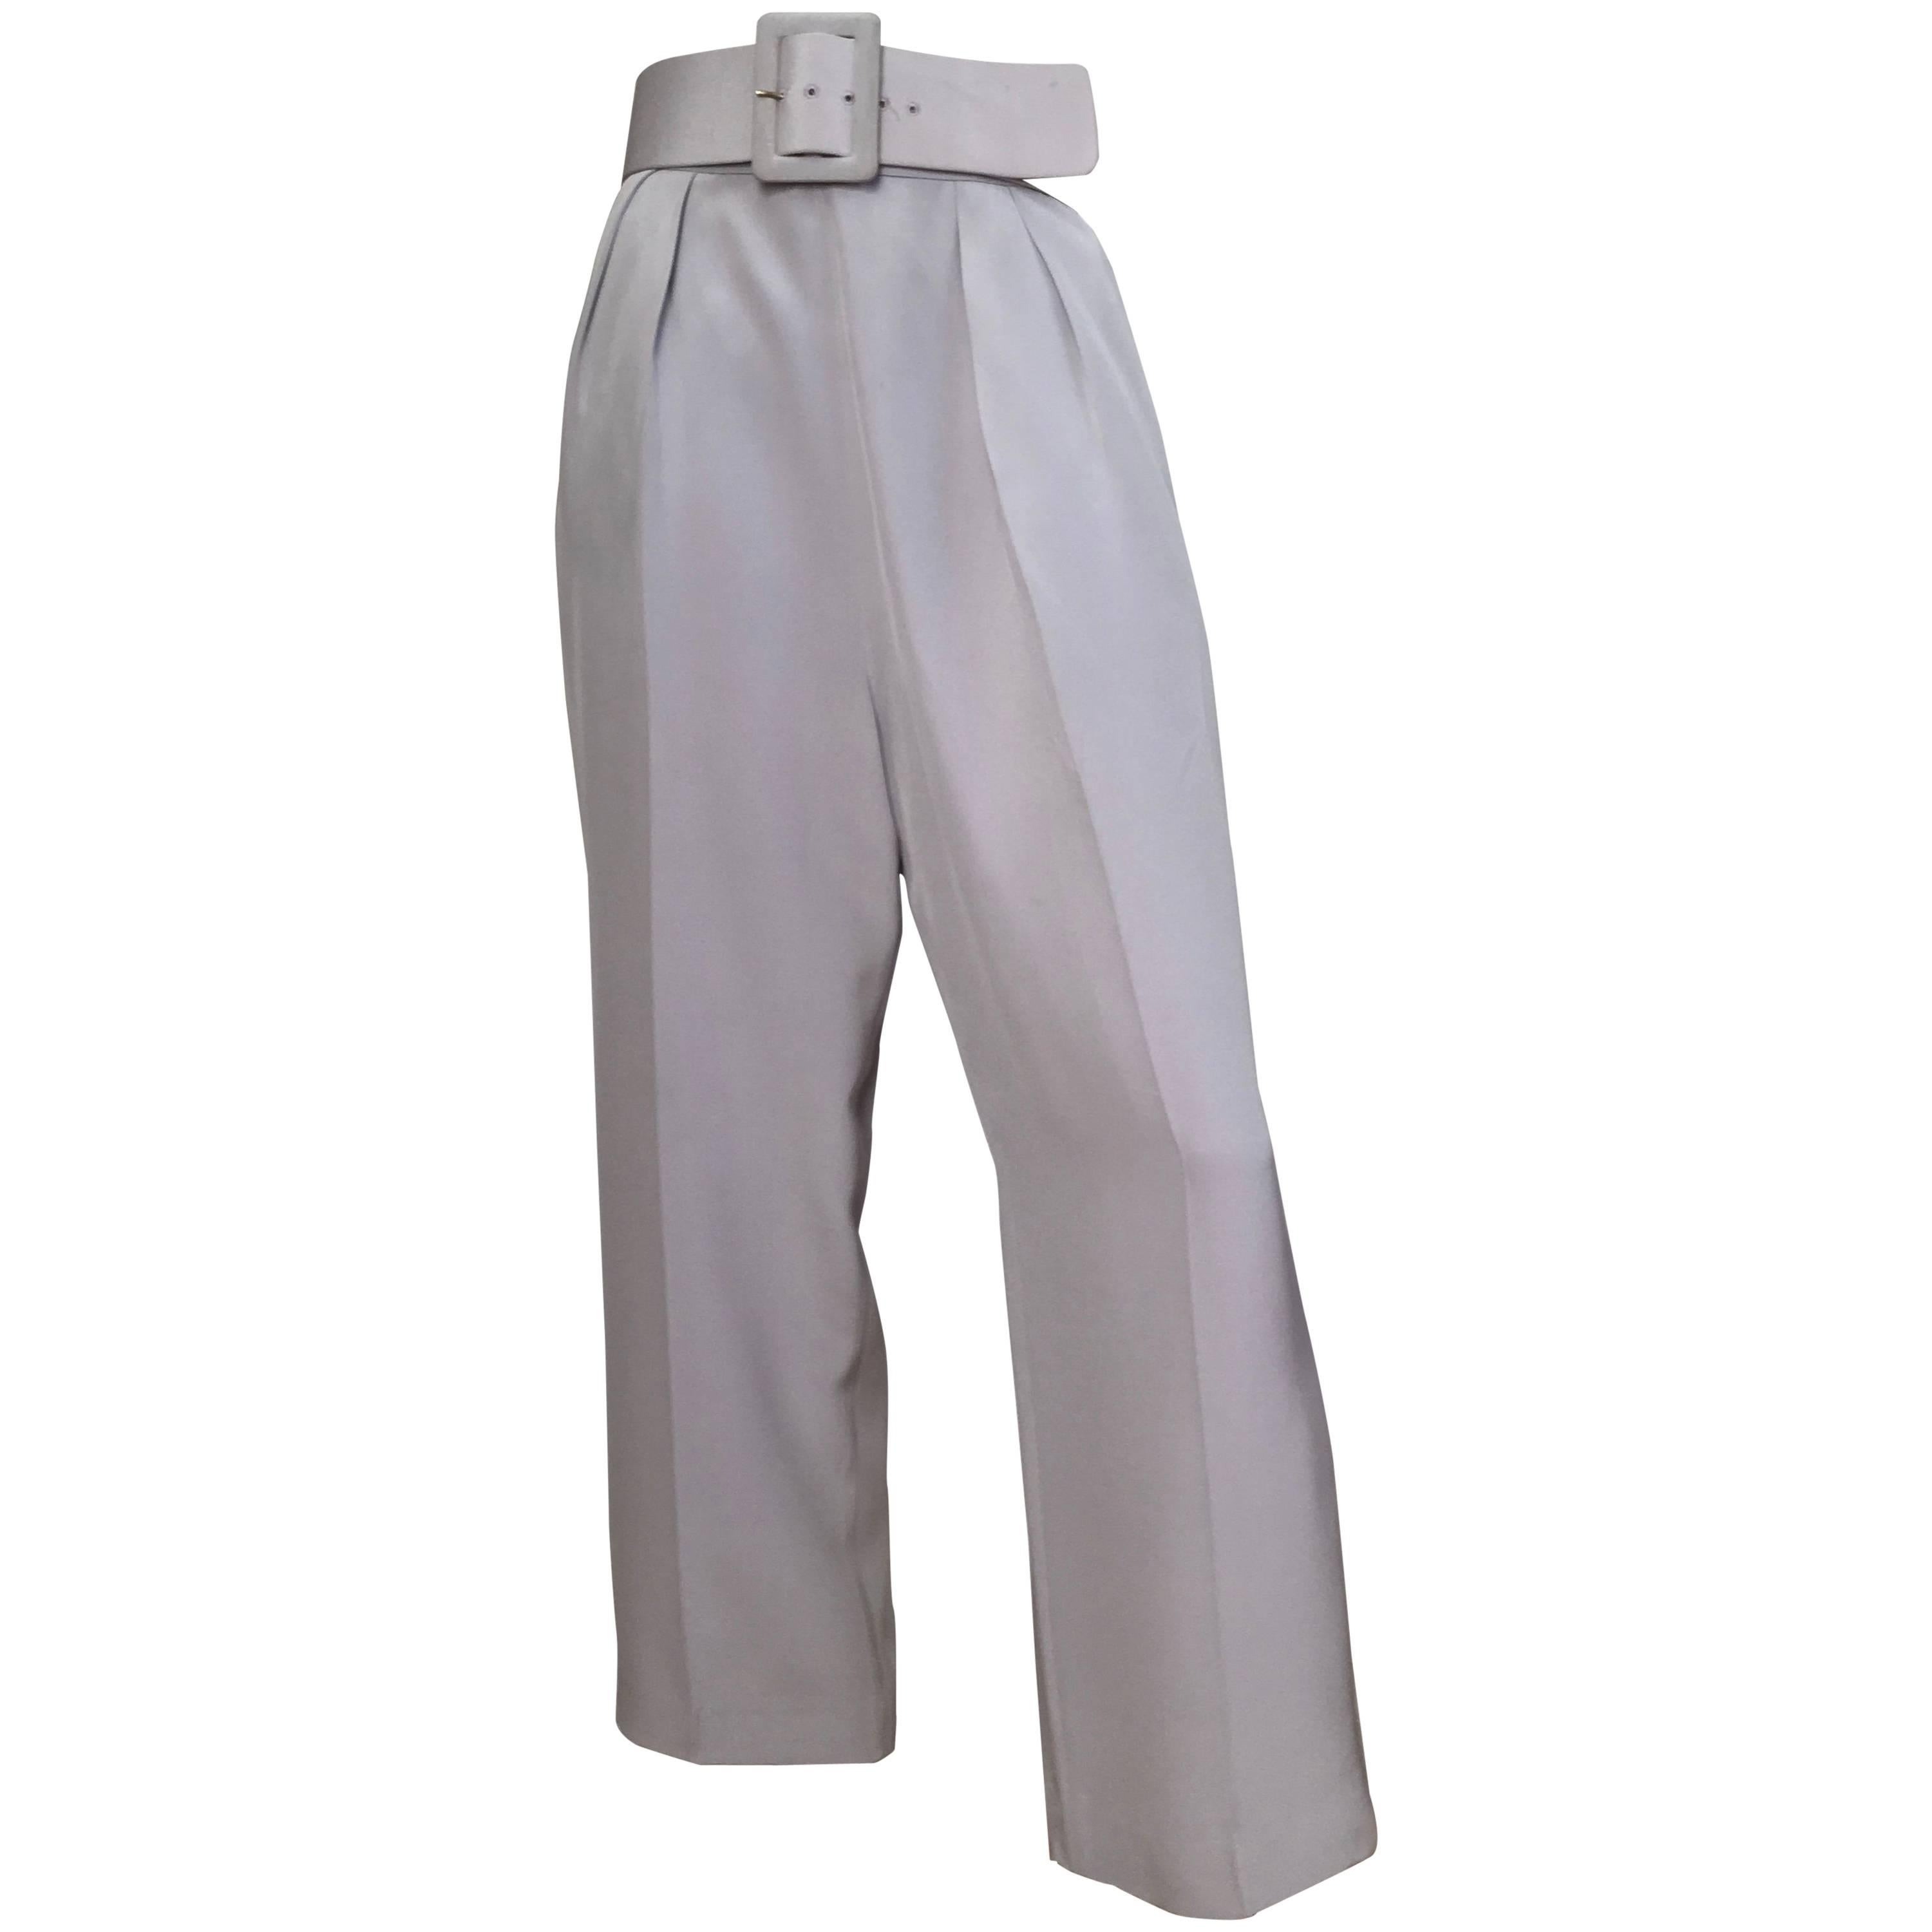 Oscar de la Renta Silver Grey Silk Pleated Pants with Pockets & Belt Size 6.